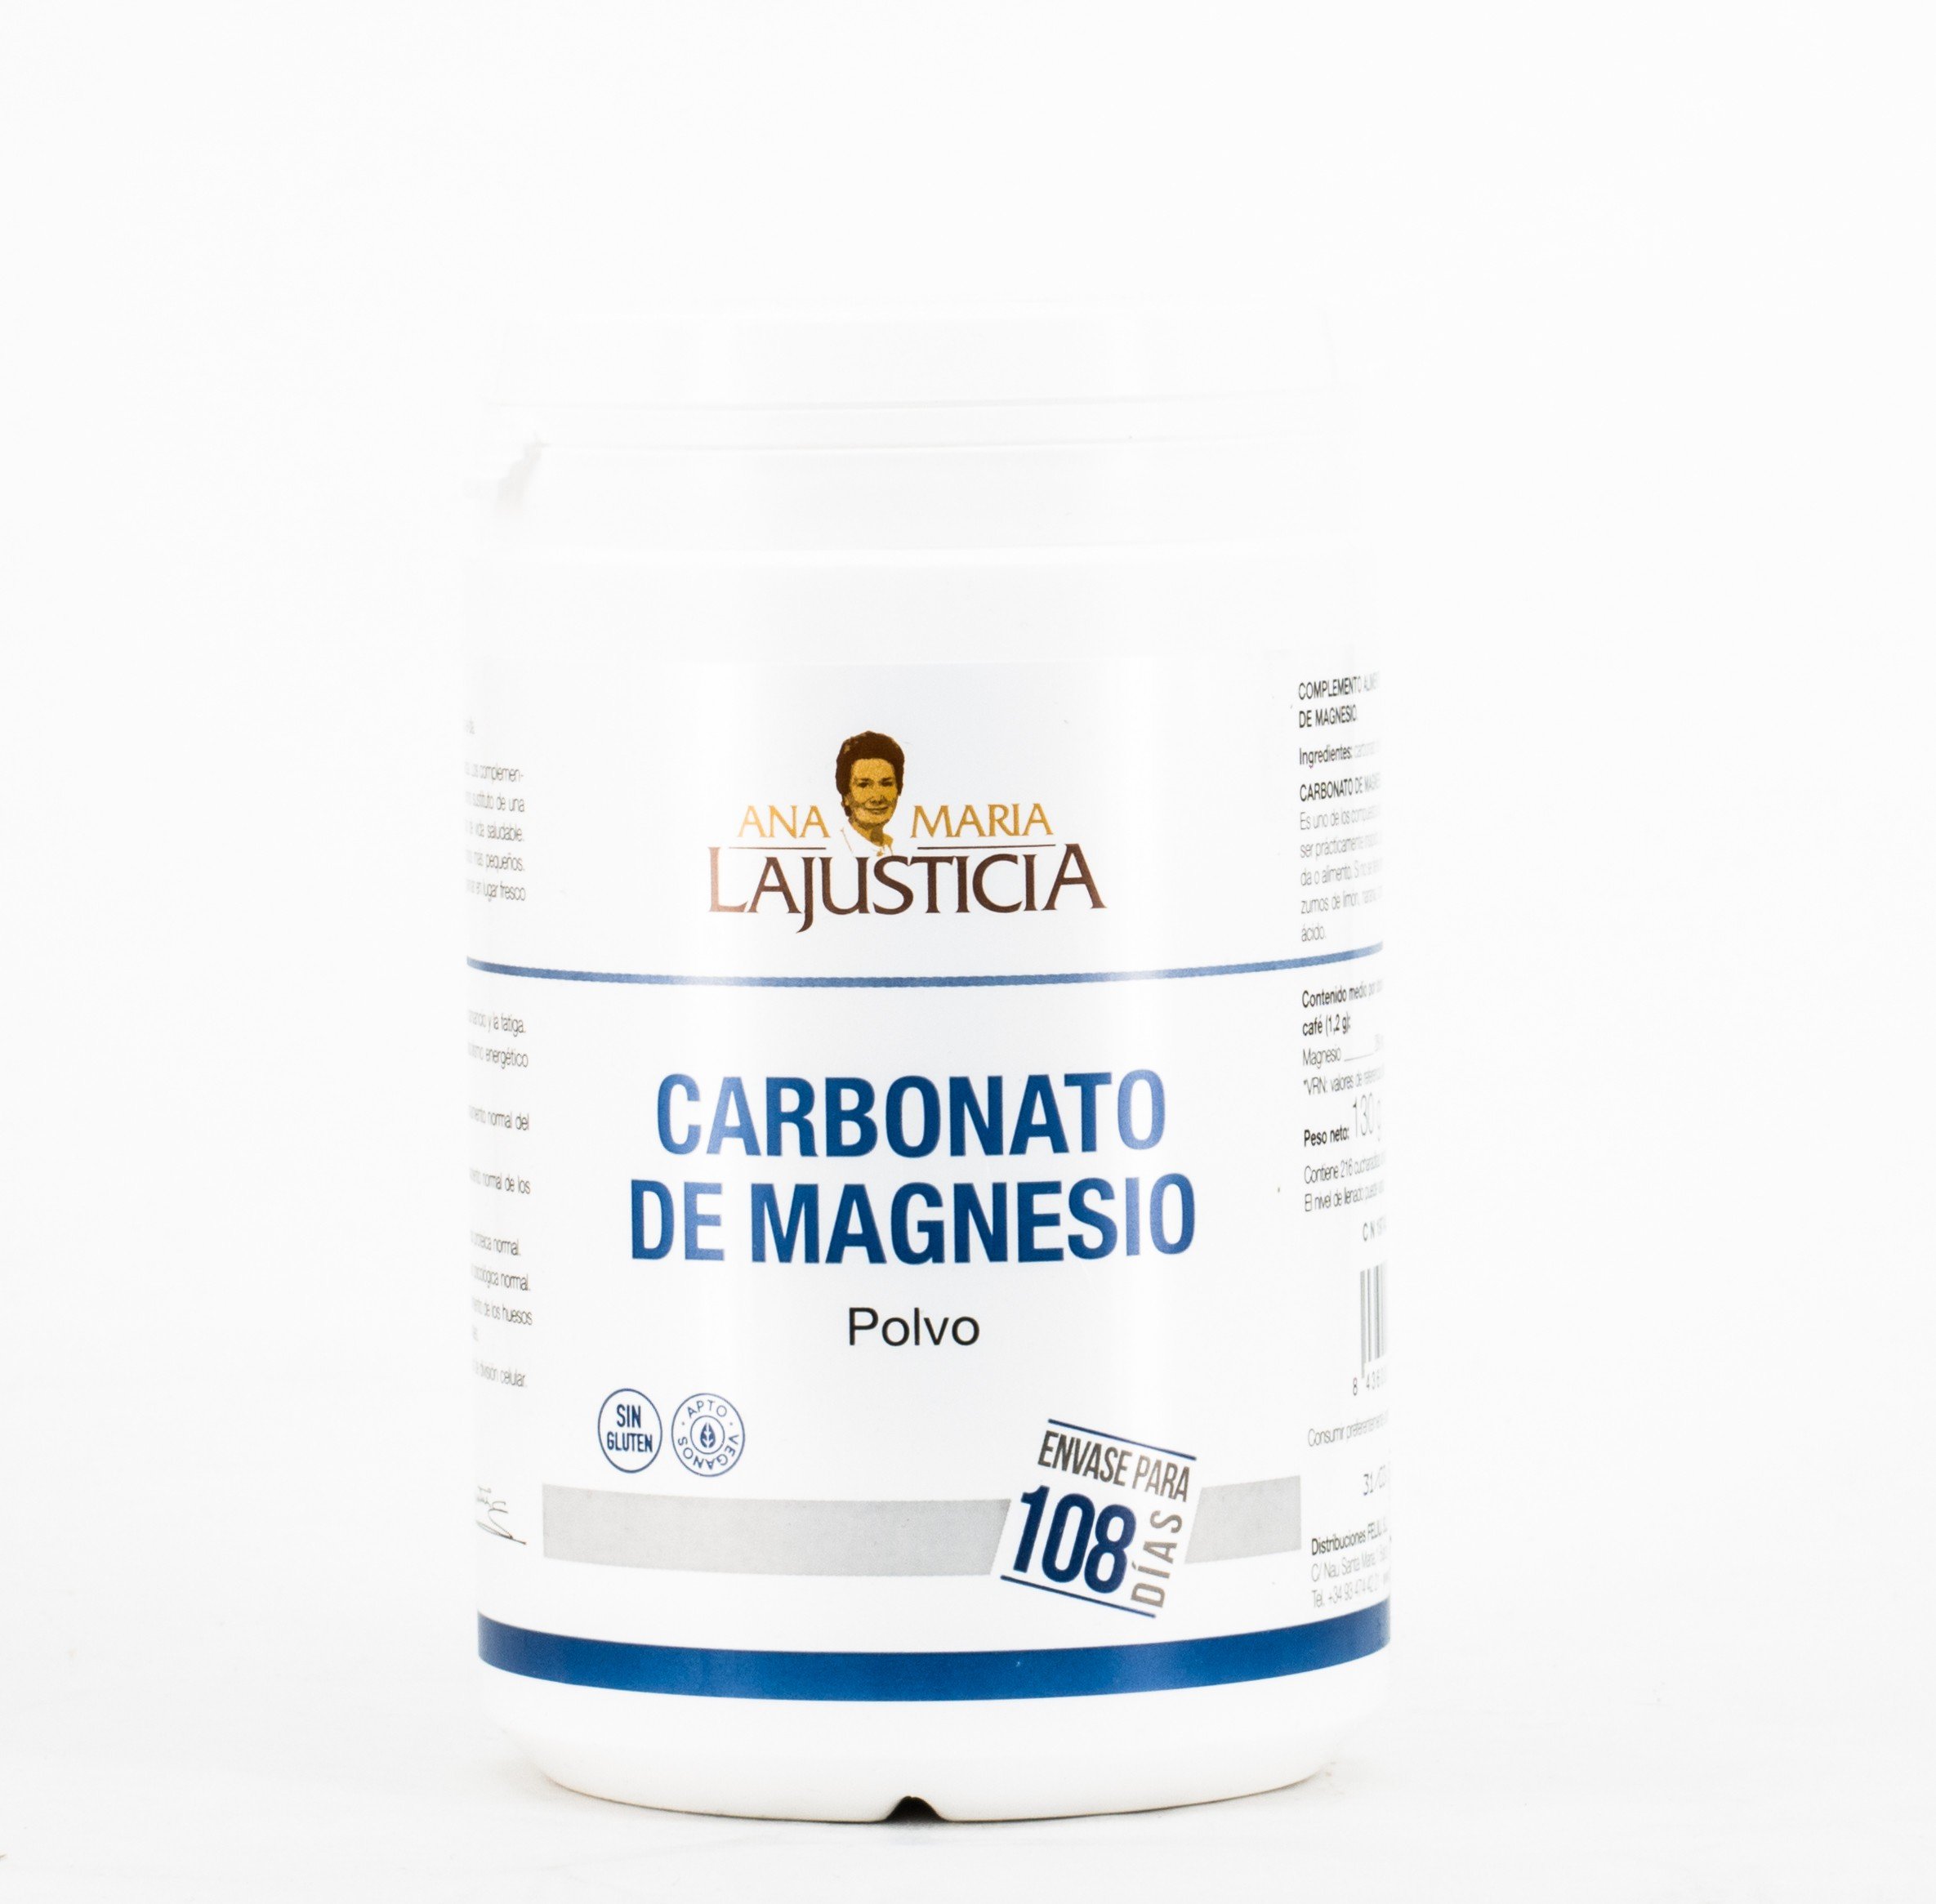 AnaMaría Lajusticia Carbonato de Magnesio, 130g